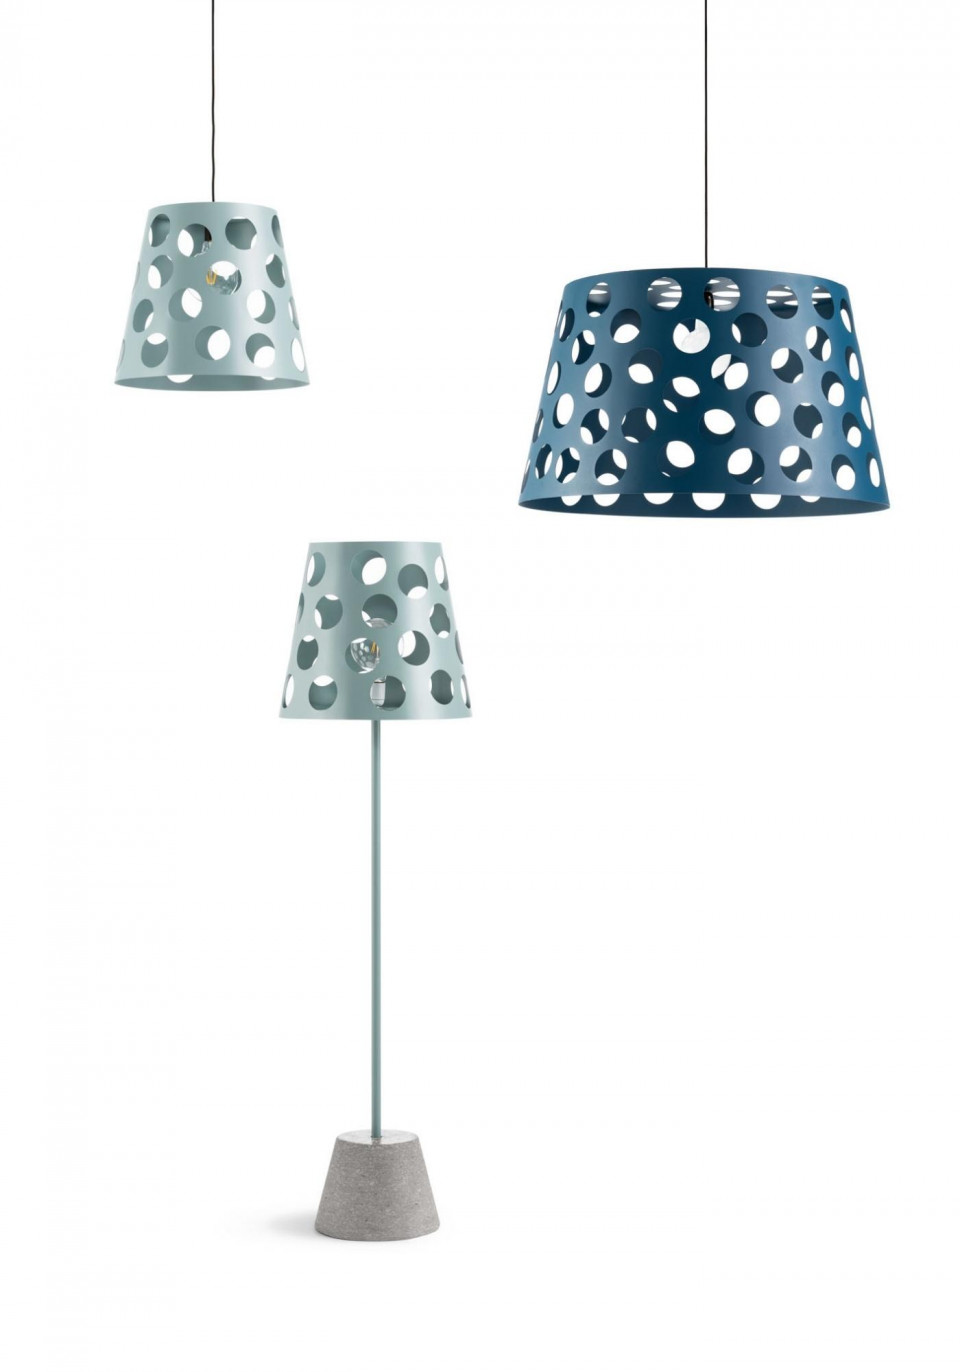 Lampade della collezione Bolle design Paola Navone per MIDJ